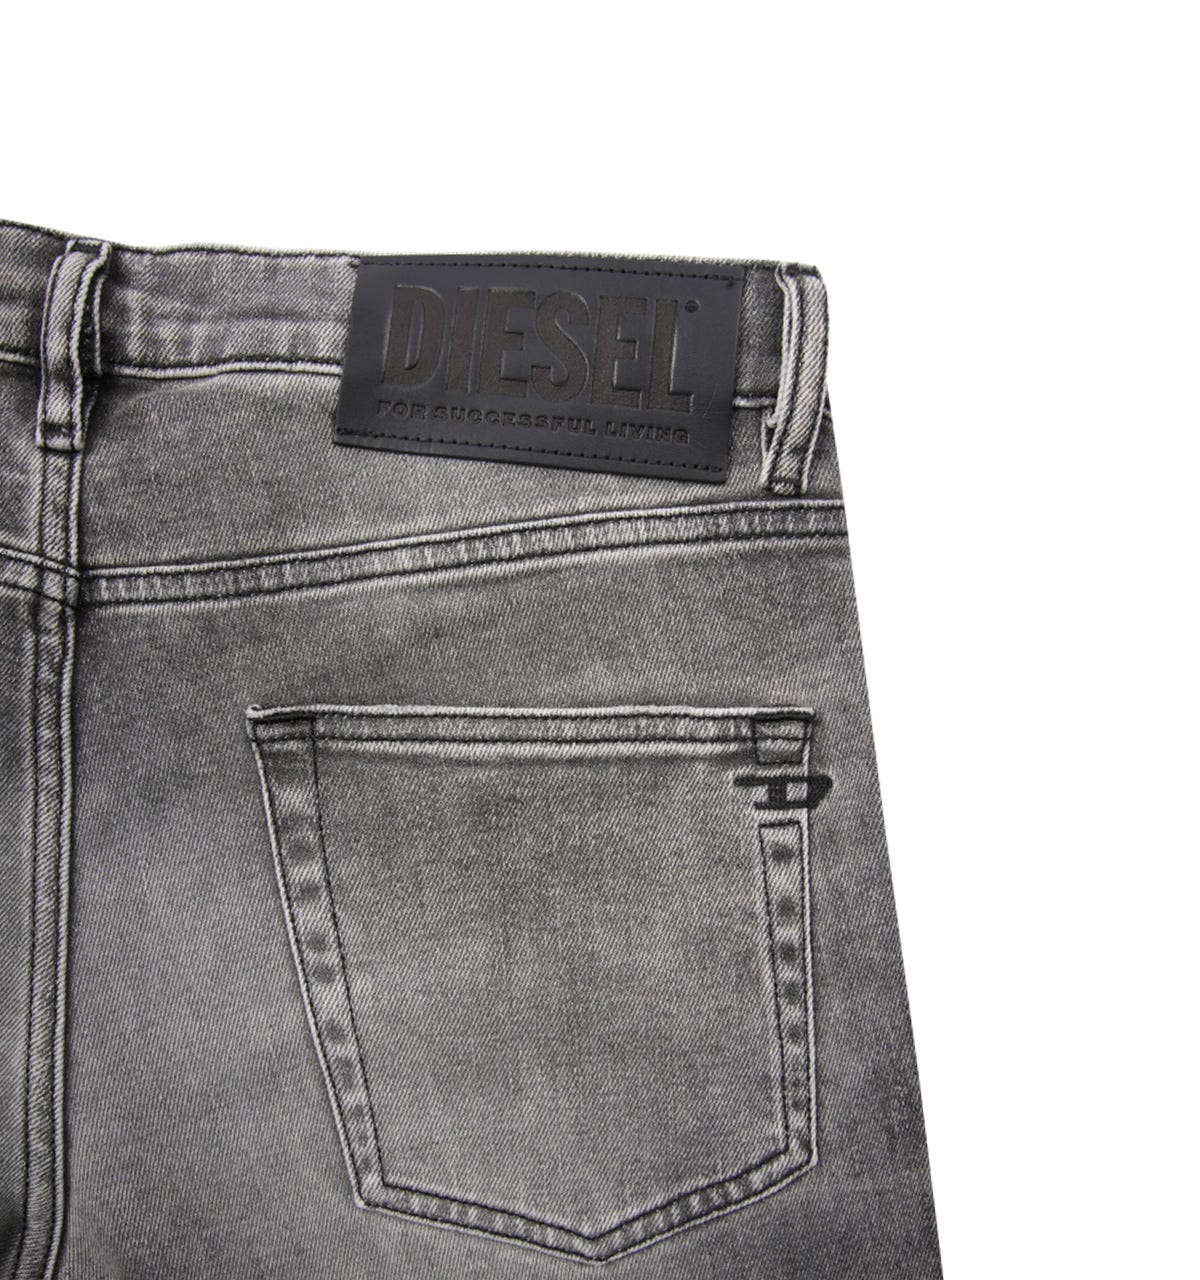 troon Kietelen gedragen Diesel D-Strikt-jeans met slanke pasvorm voor heren, zwart